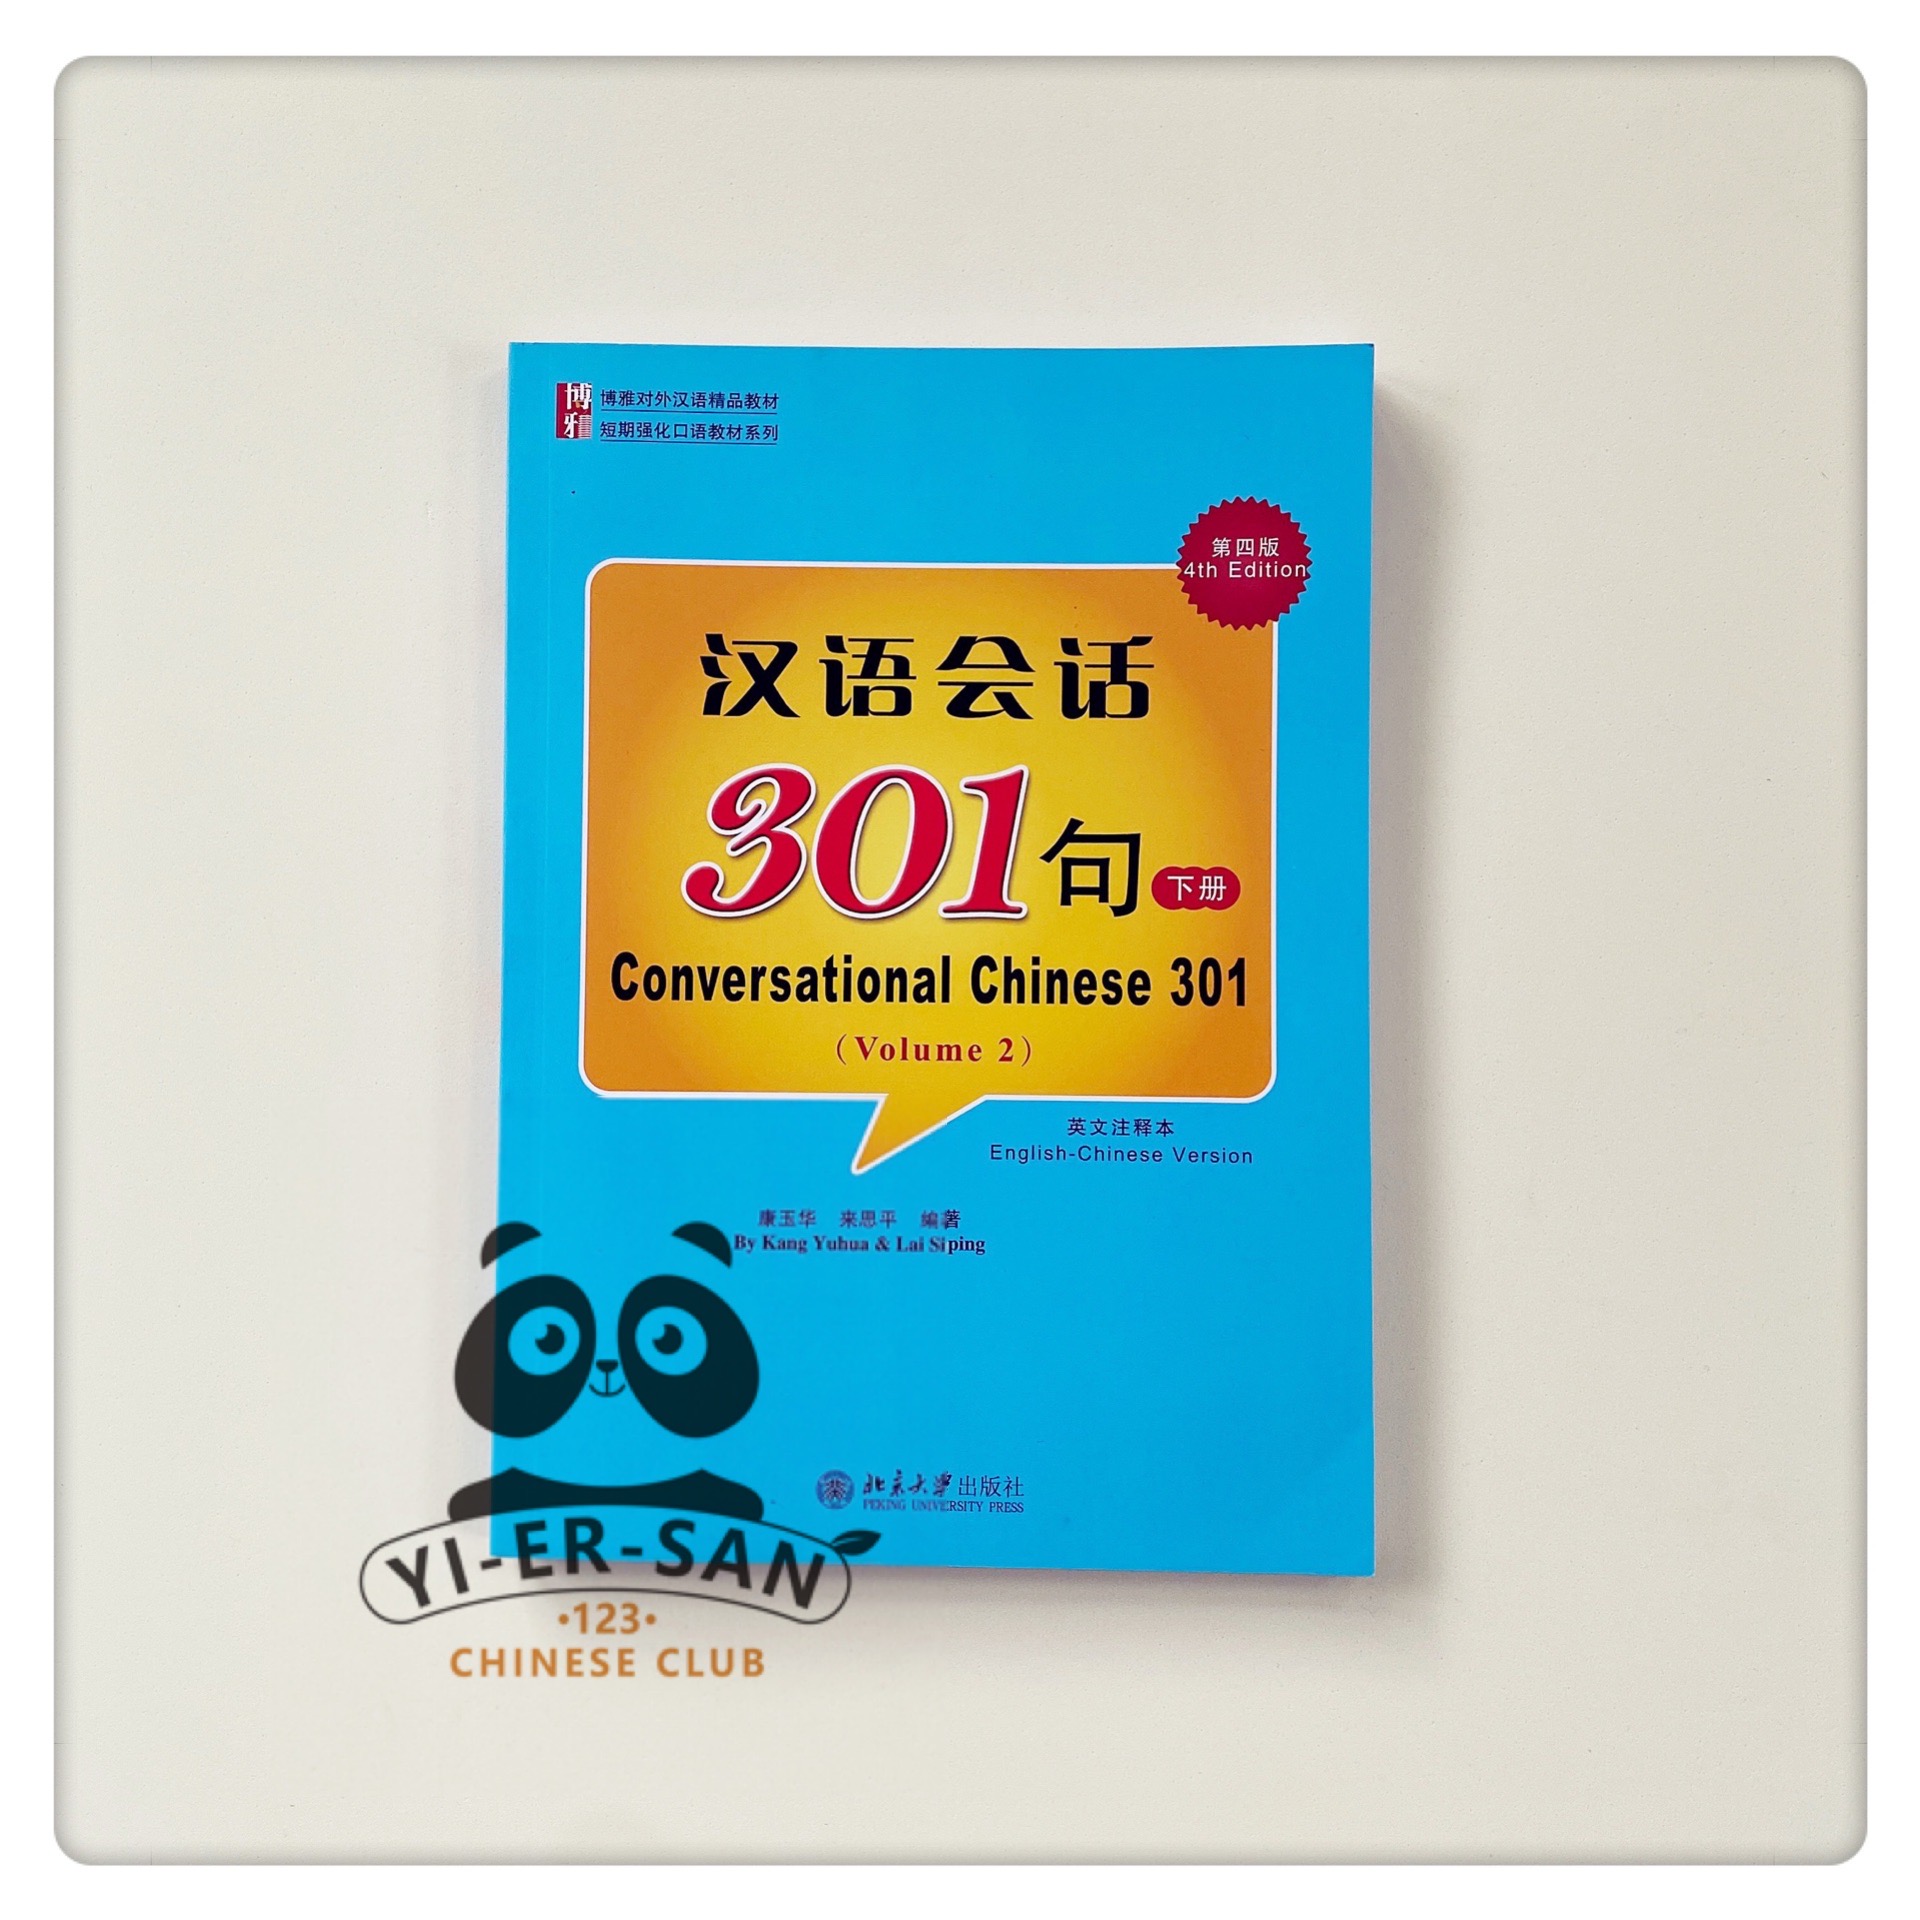 หนังสือเรียนบทสนทนาภาษาจีน เล่ม2  Conversational Chinese 301 volume2《汉语会话301ประโยค 下册》